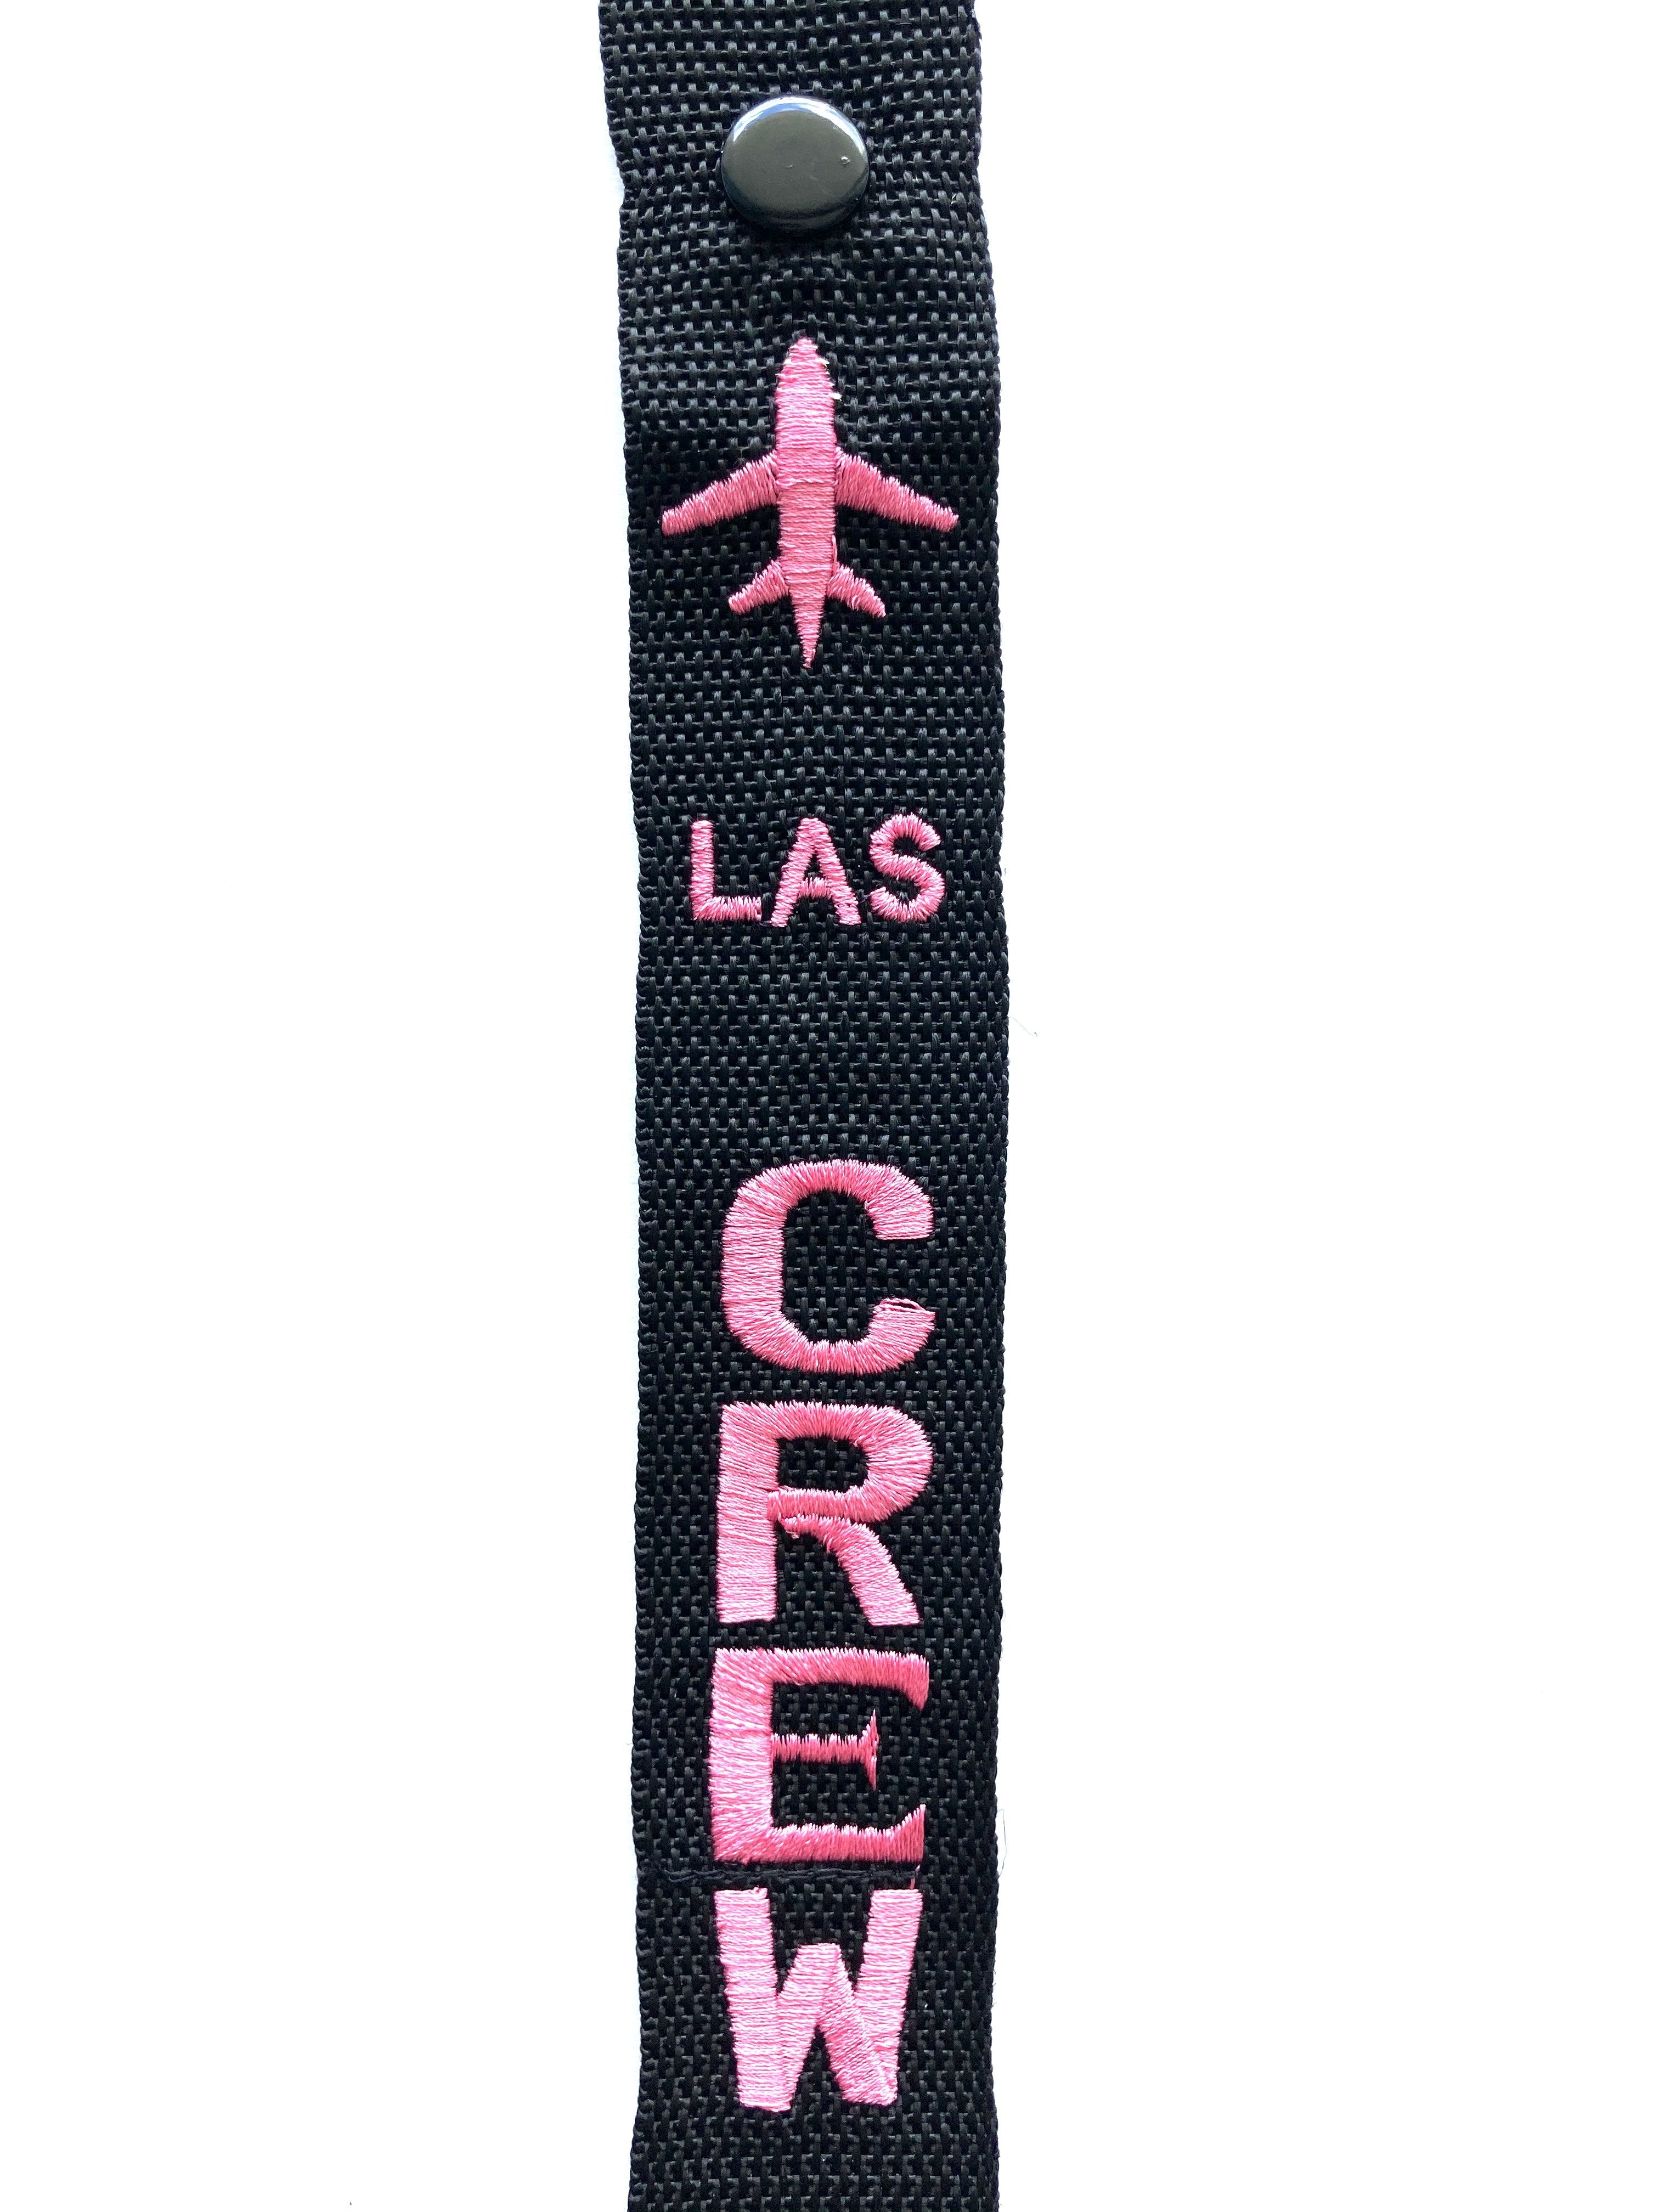 CREW Luggage Tag - LAS Pink